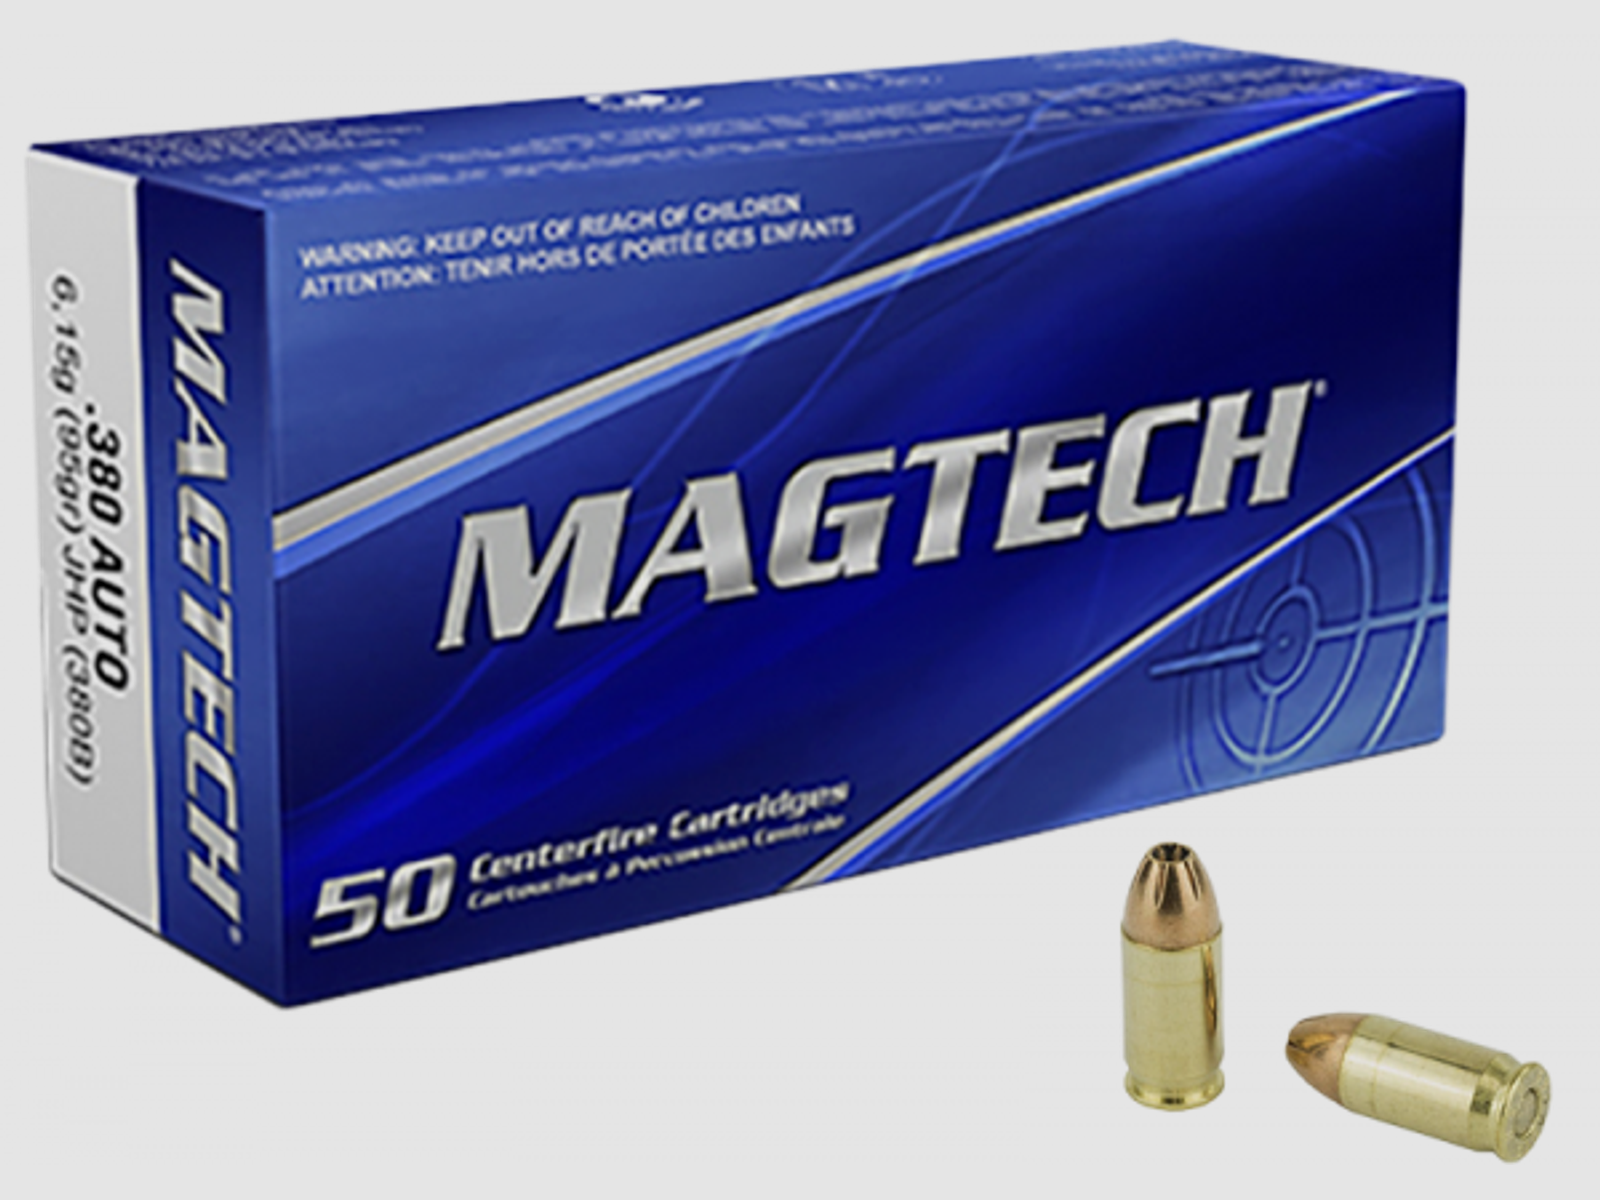 Magtech Standard 9mm Browning Kurz (.380 ACP) JHP 95 grs Pistolenpatronen